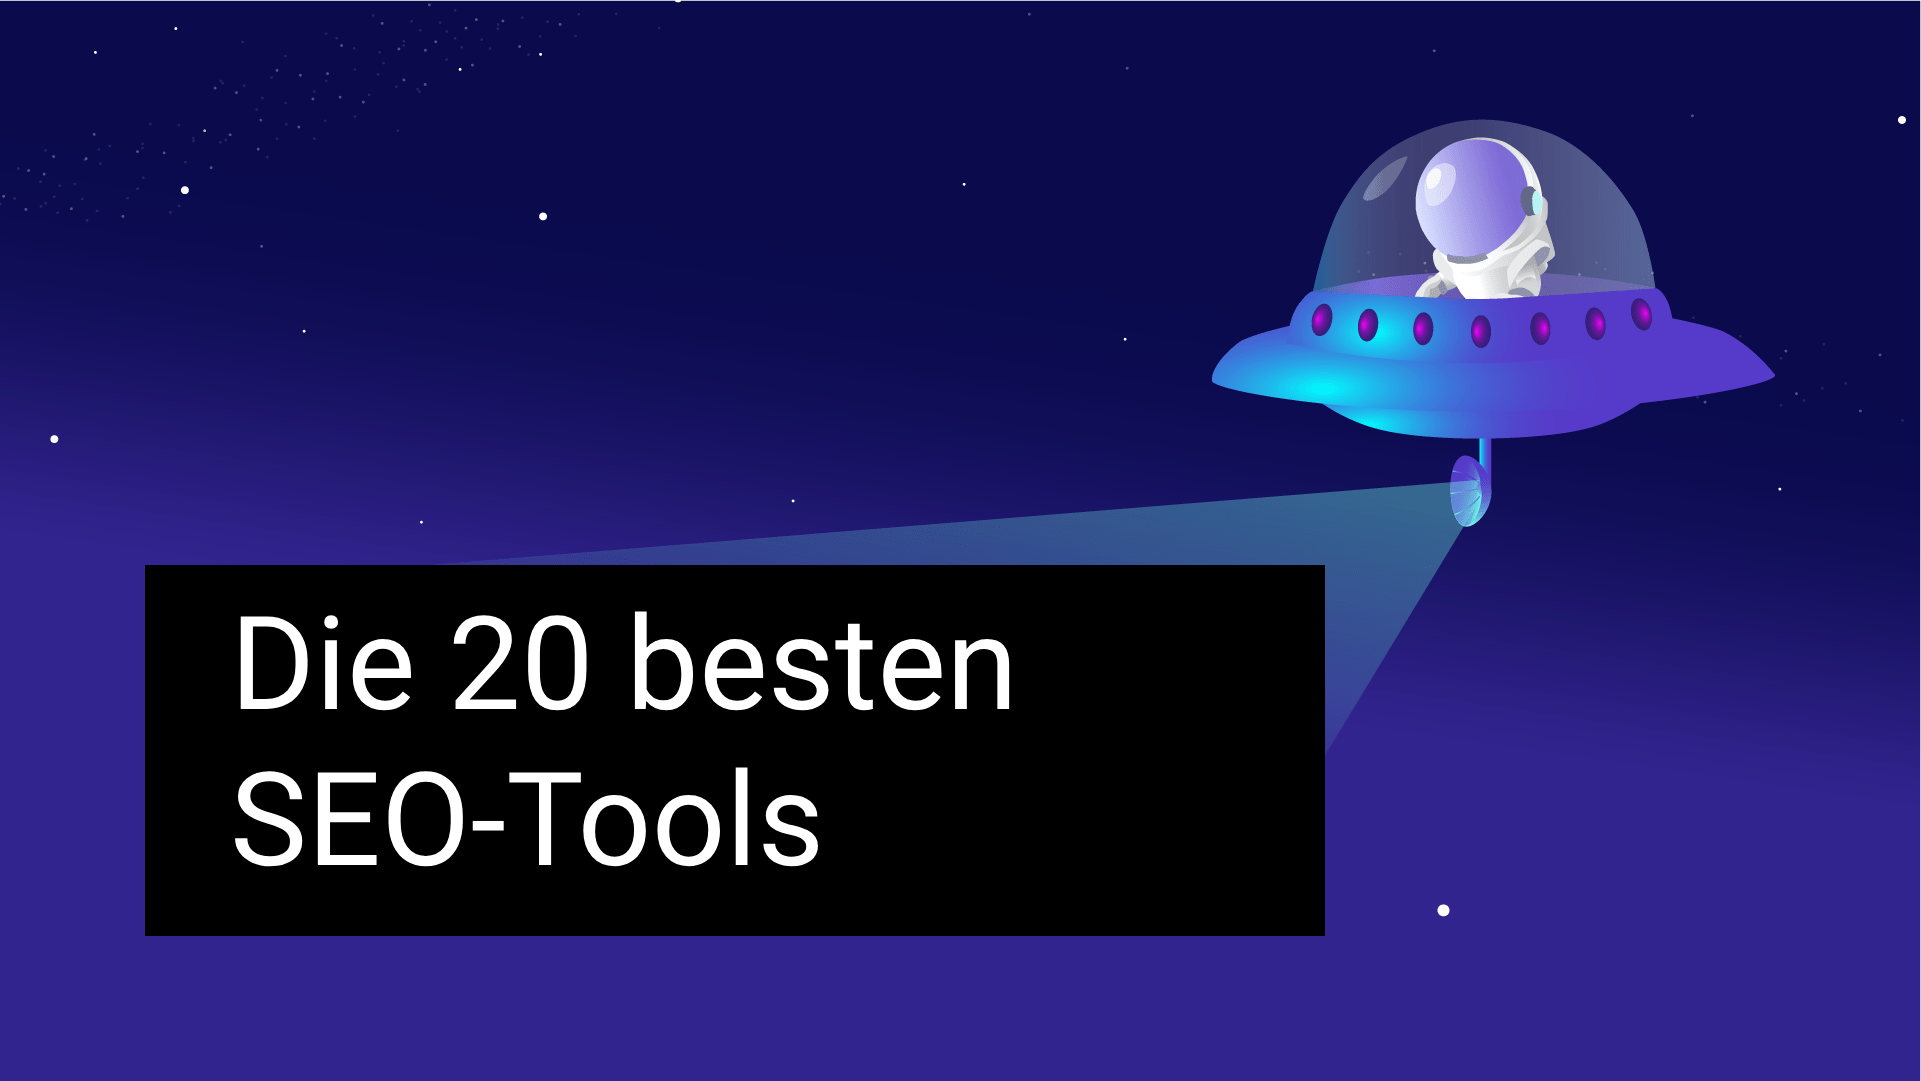 Besten SEO tools